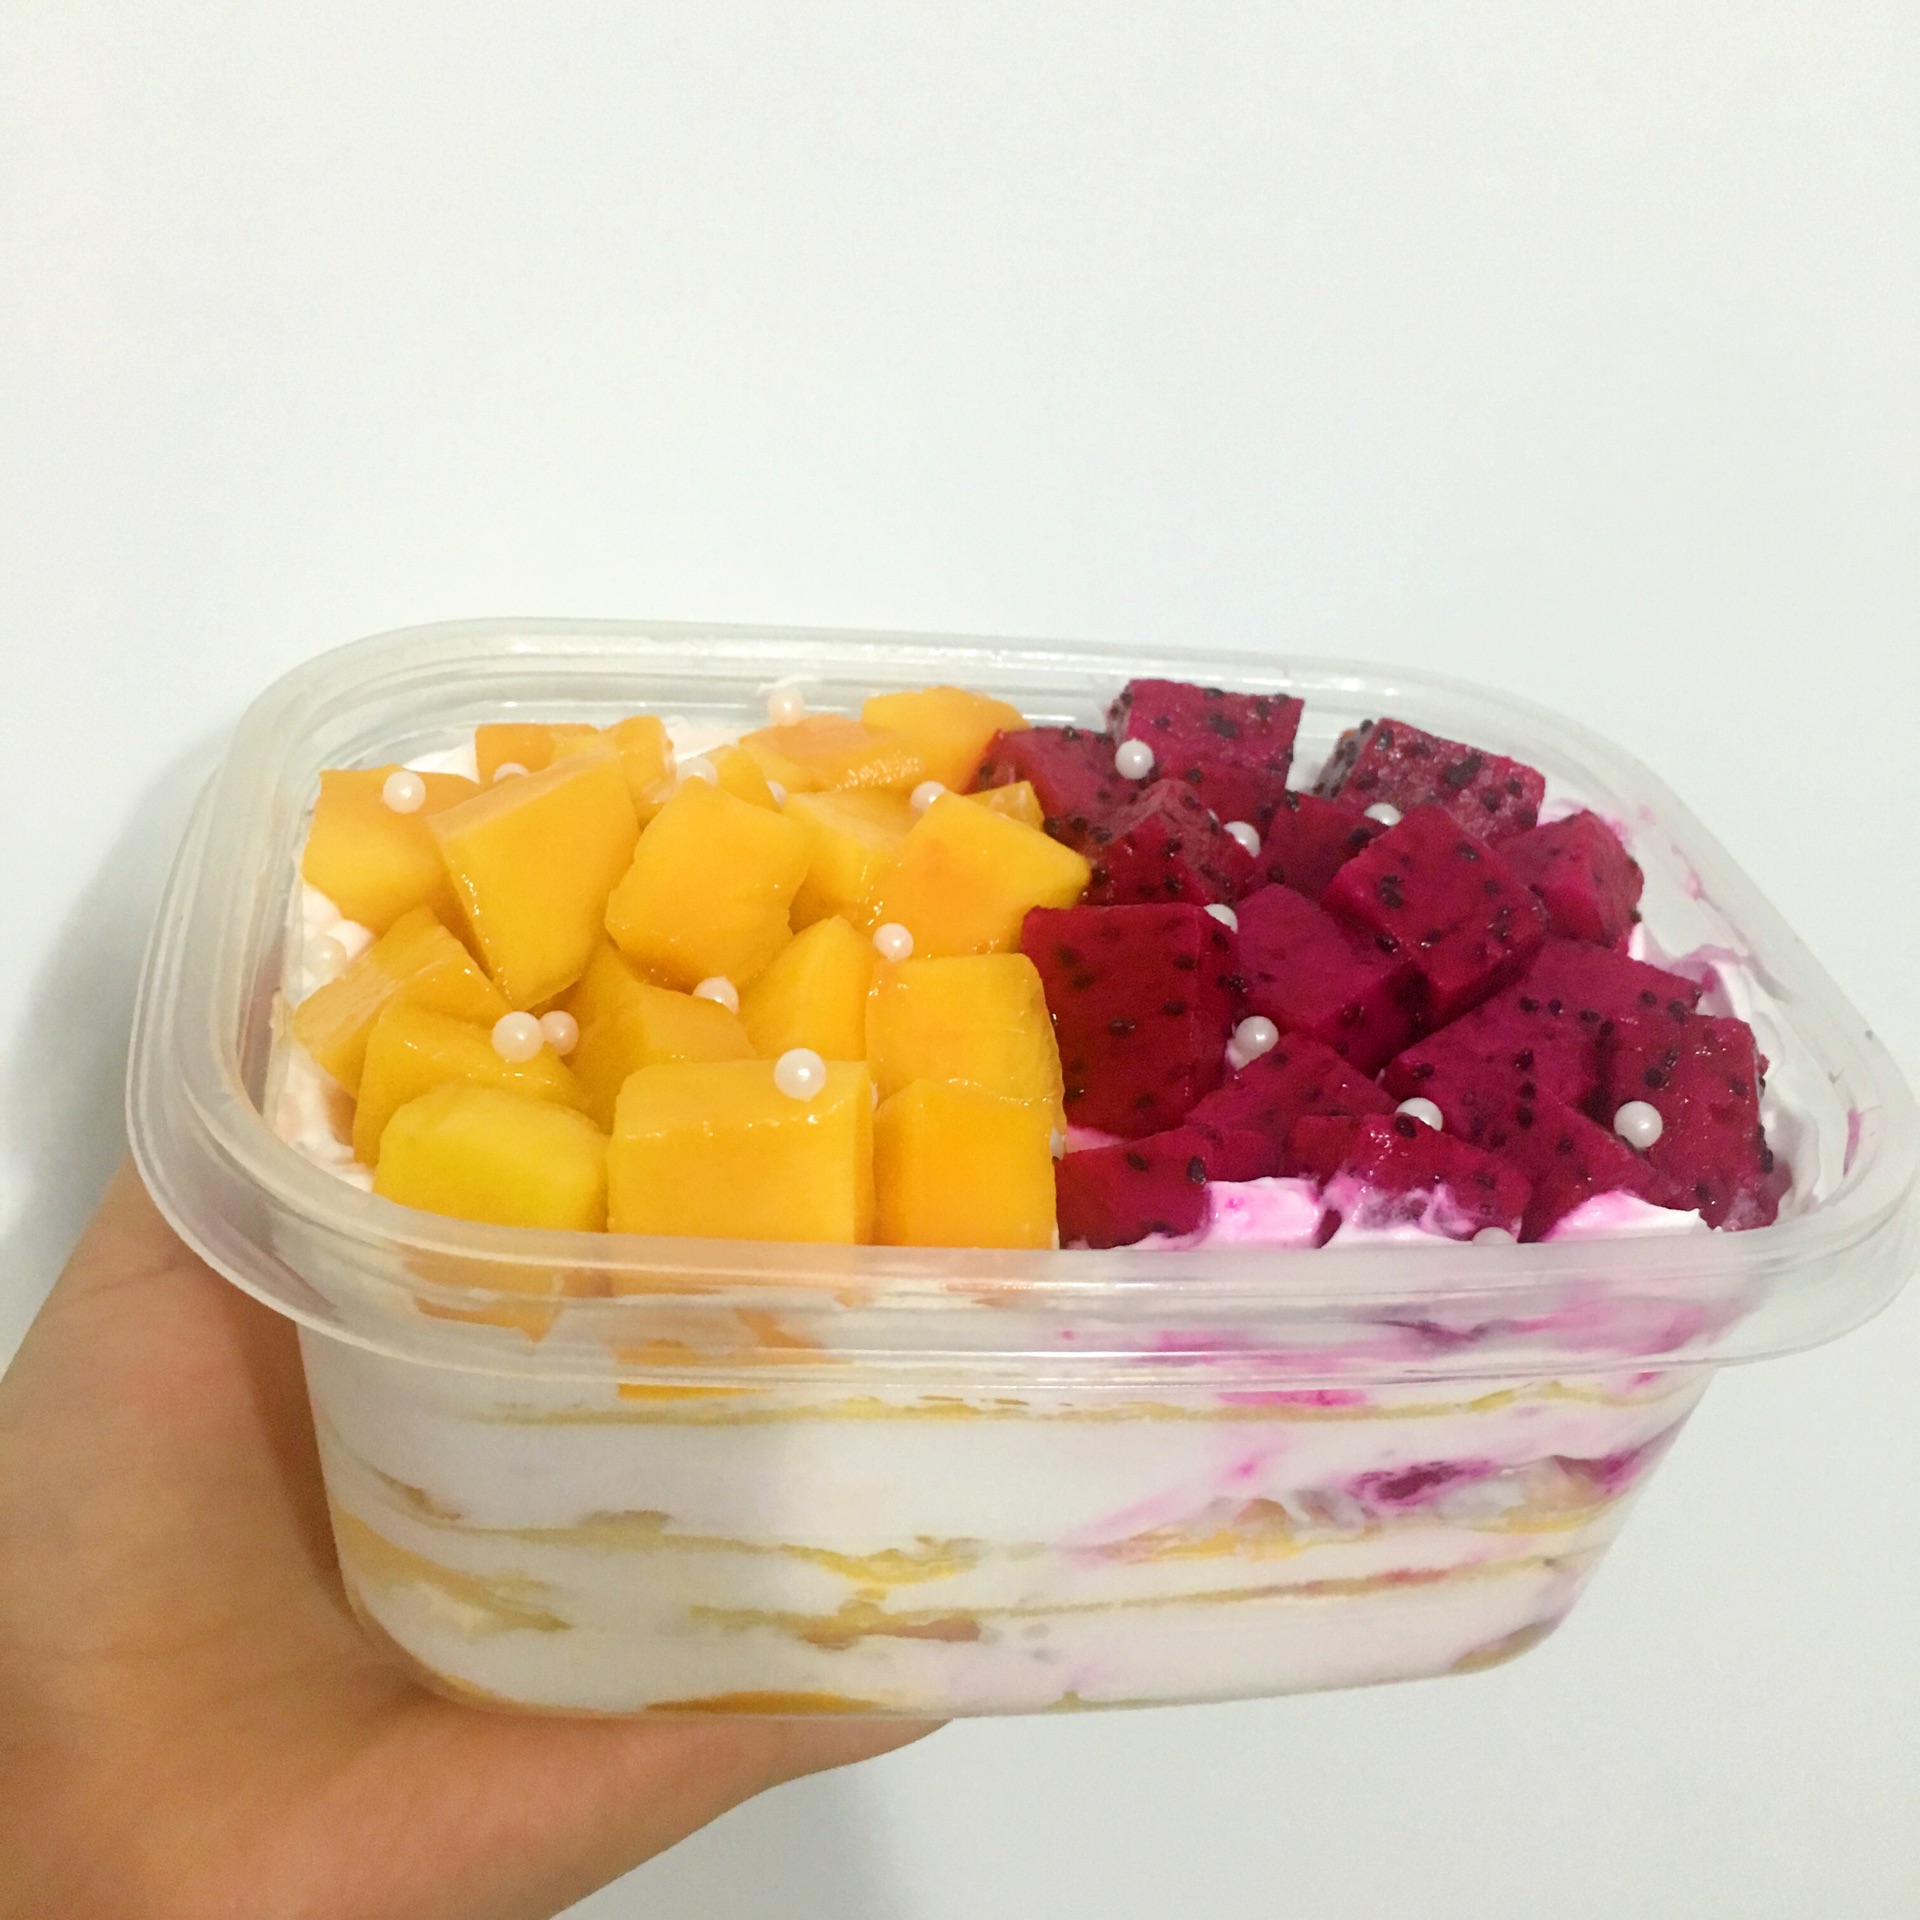 佳佳DiY蛋糕坊: 火龙果燕菜蛋糕作品 Dragon Fruit Jelly Cake Sample